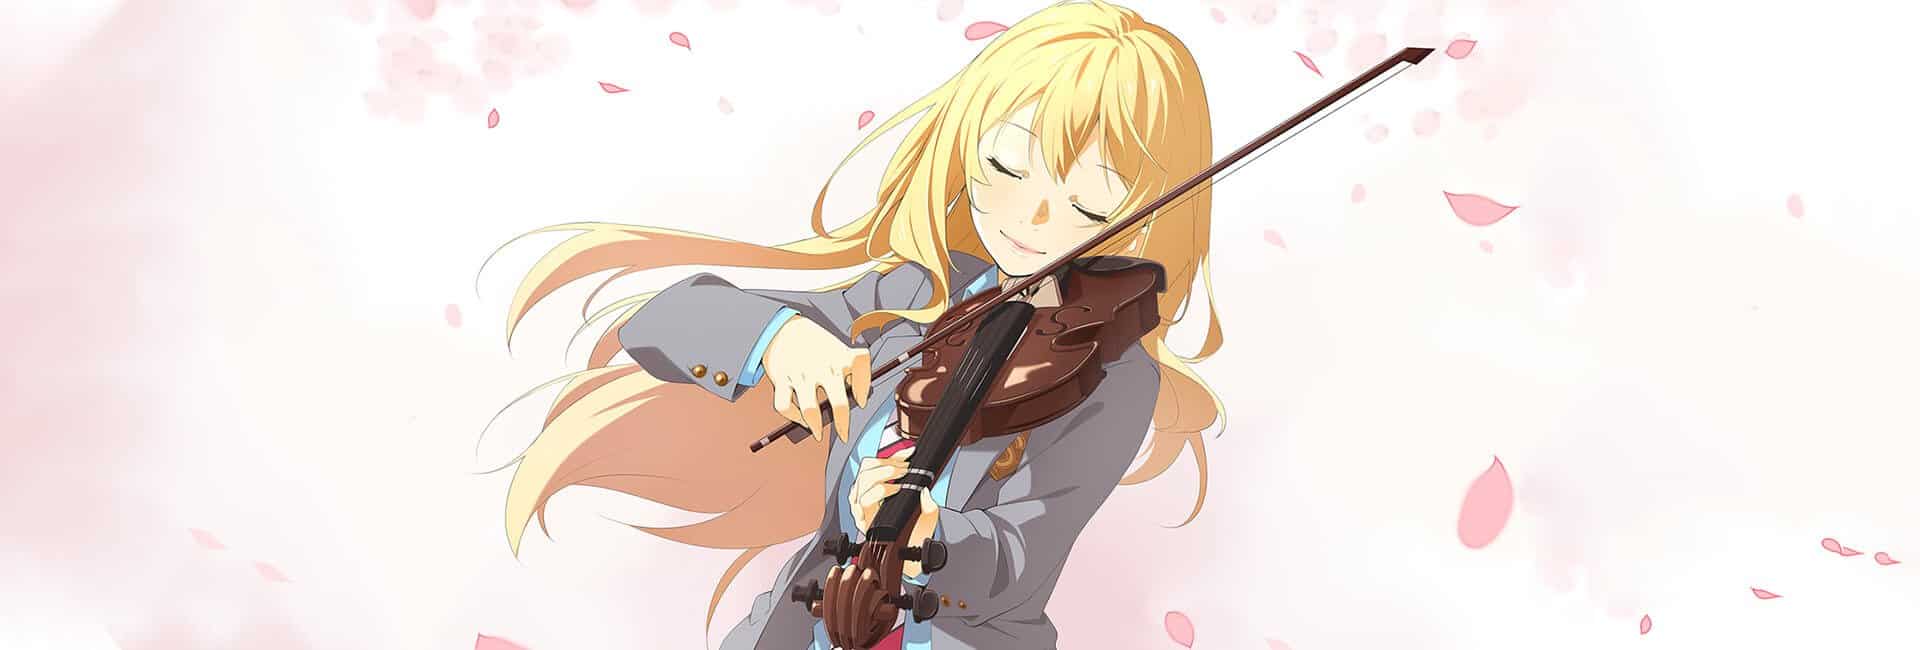 Kaori de shigatsu wa kimi no uso - your lie on april - tocando violino